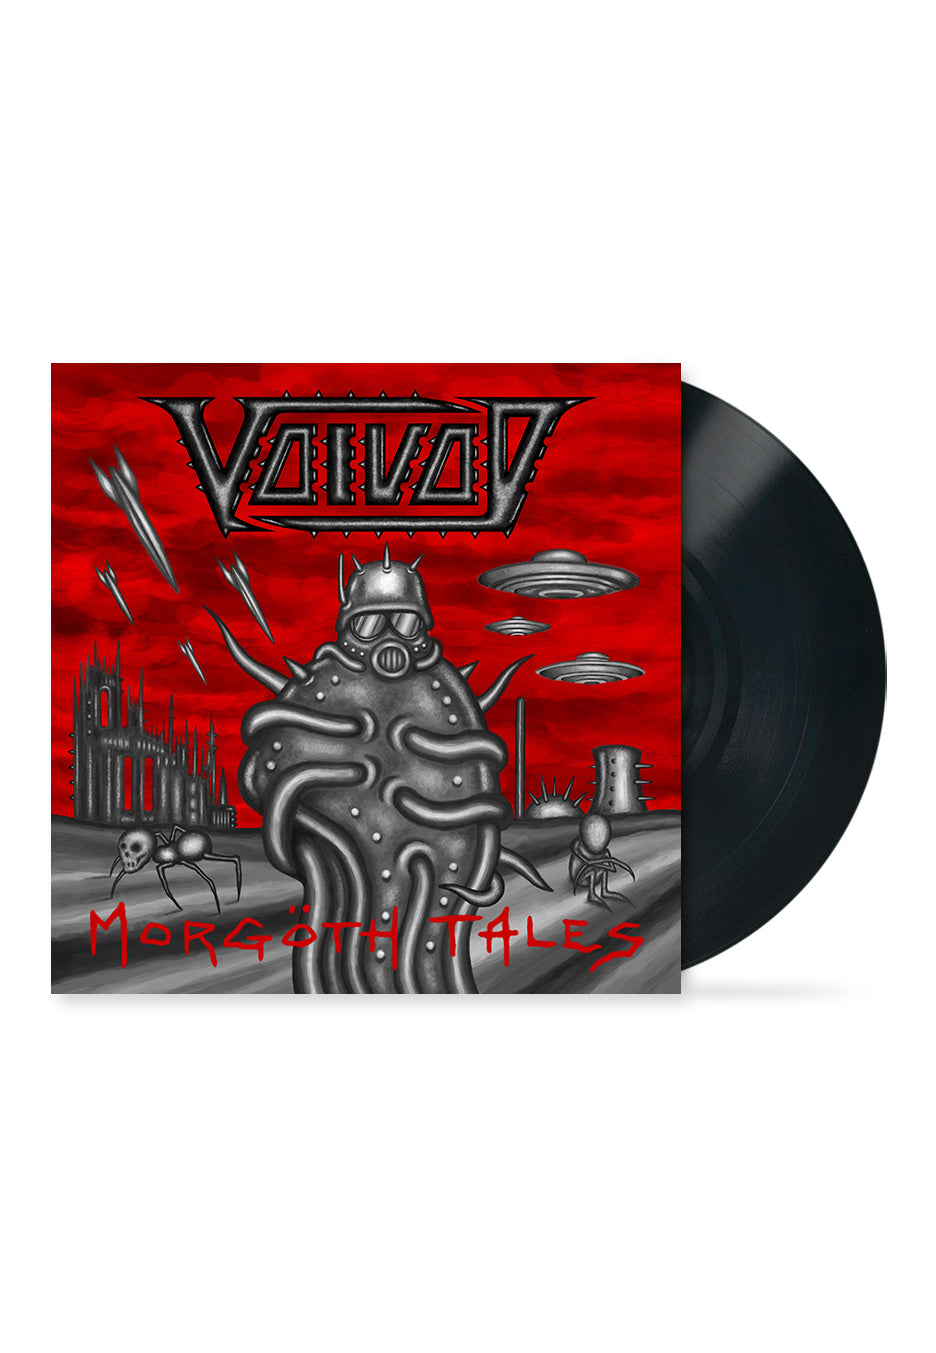 Voivod - Morgöth Tales - Vinyl